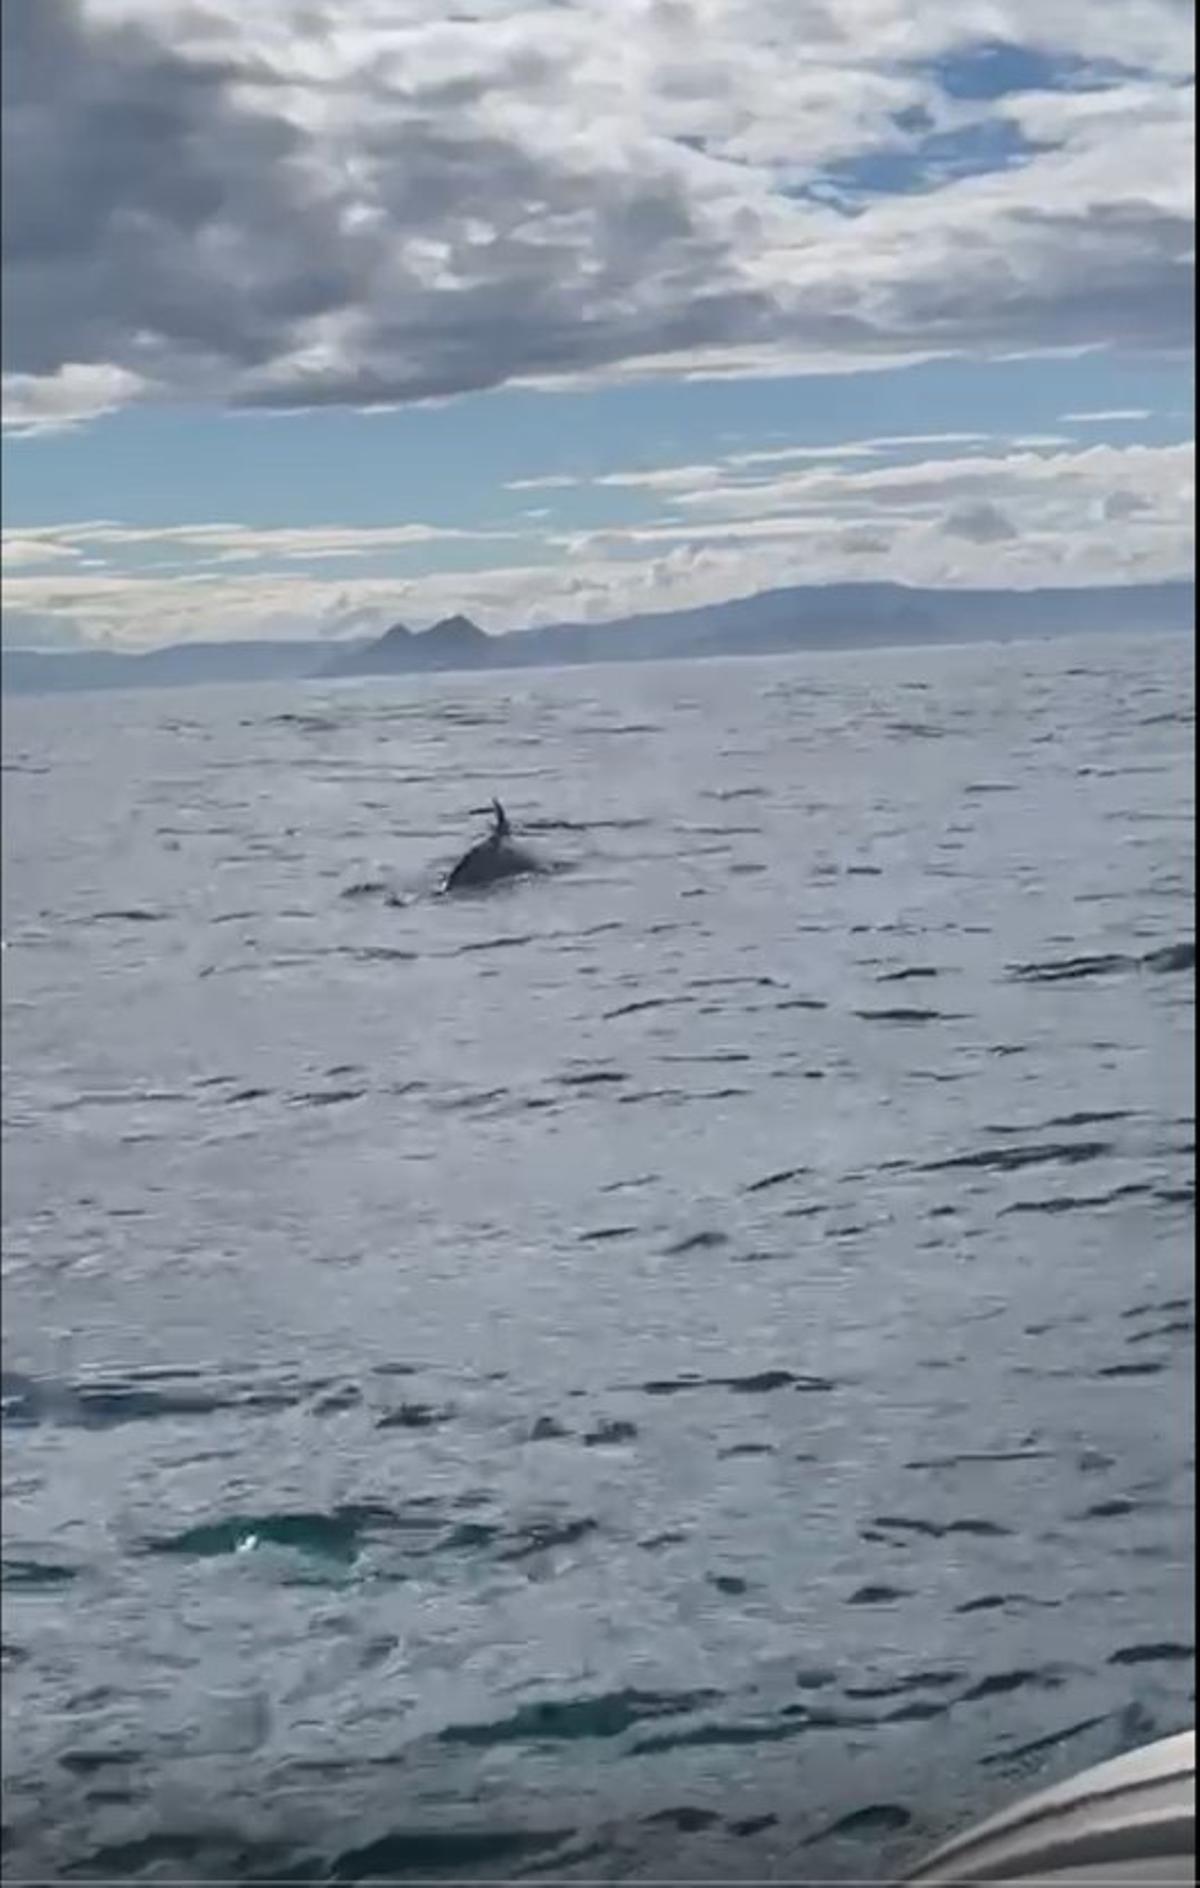 La aleta de la orca junto al pesquero cerca de Ons.